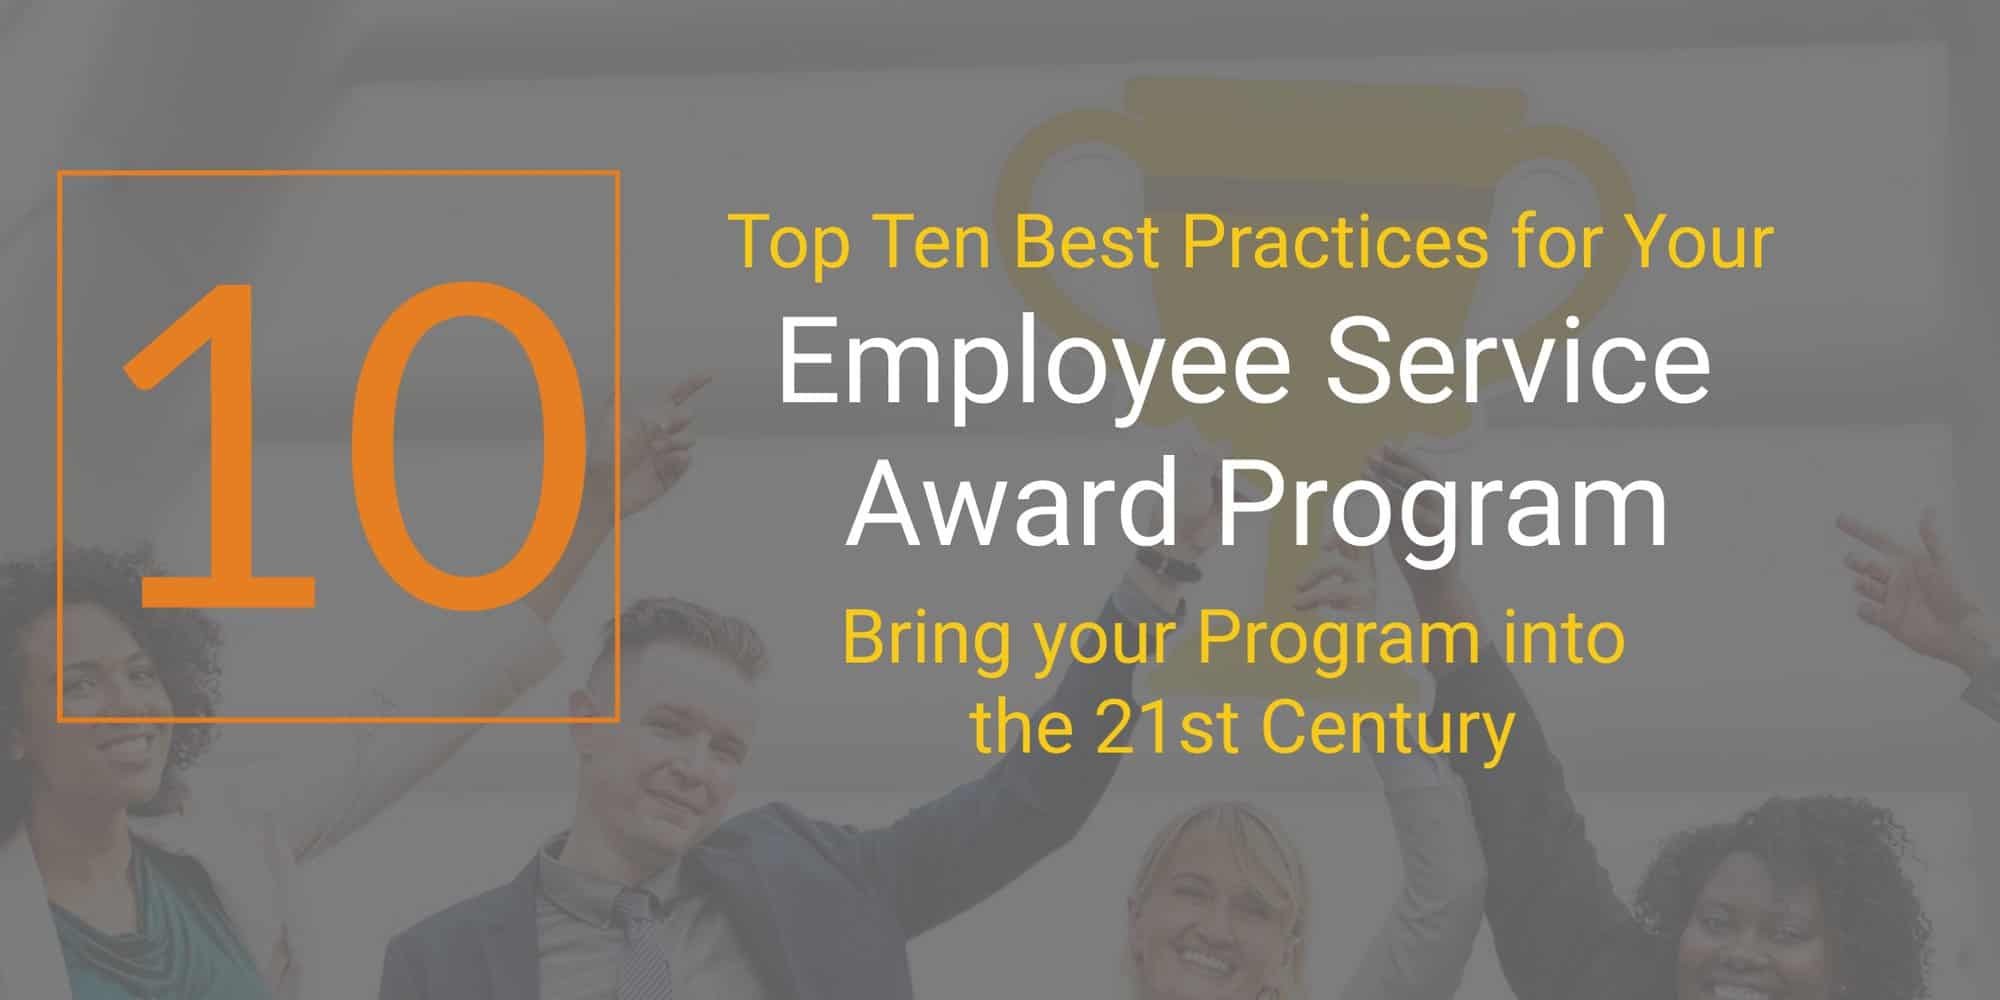 Top Ten Best Practices for Your Employee Service Award Program